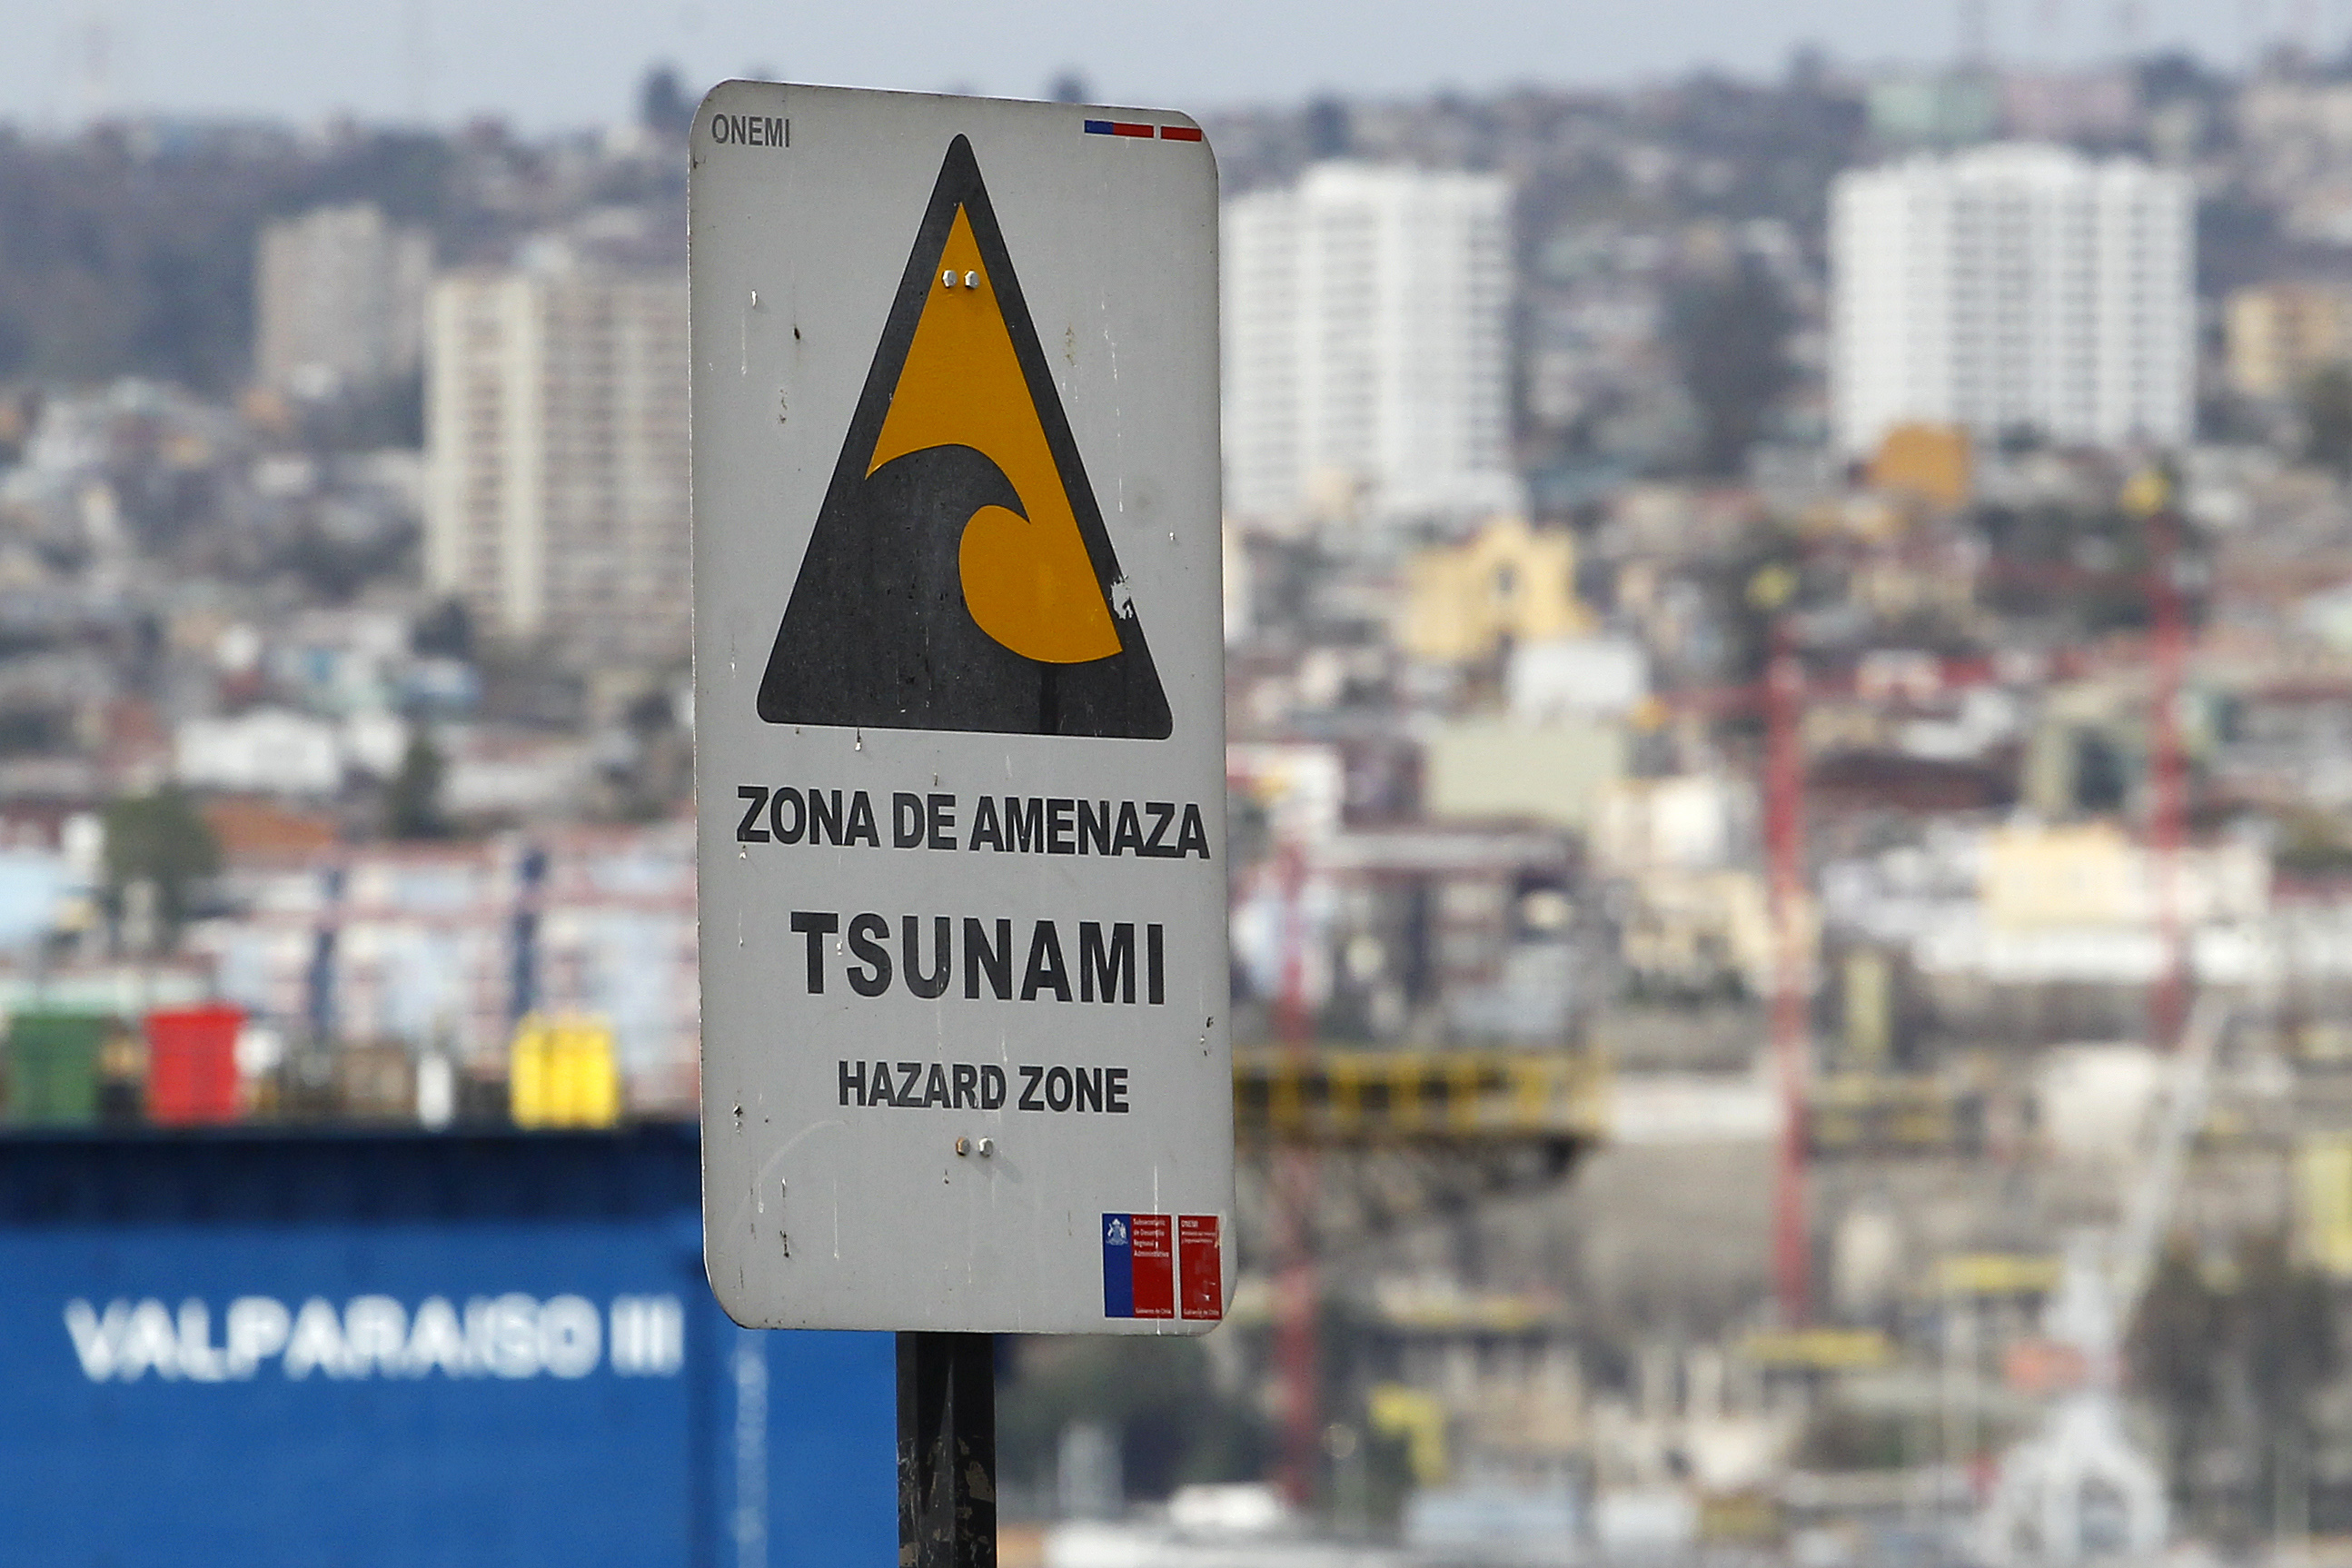 SHOA descarta tsunami en Chile tras temblor que afectó la antártica chilena